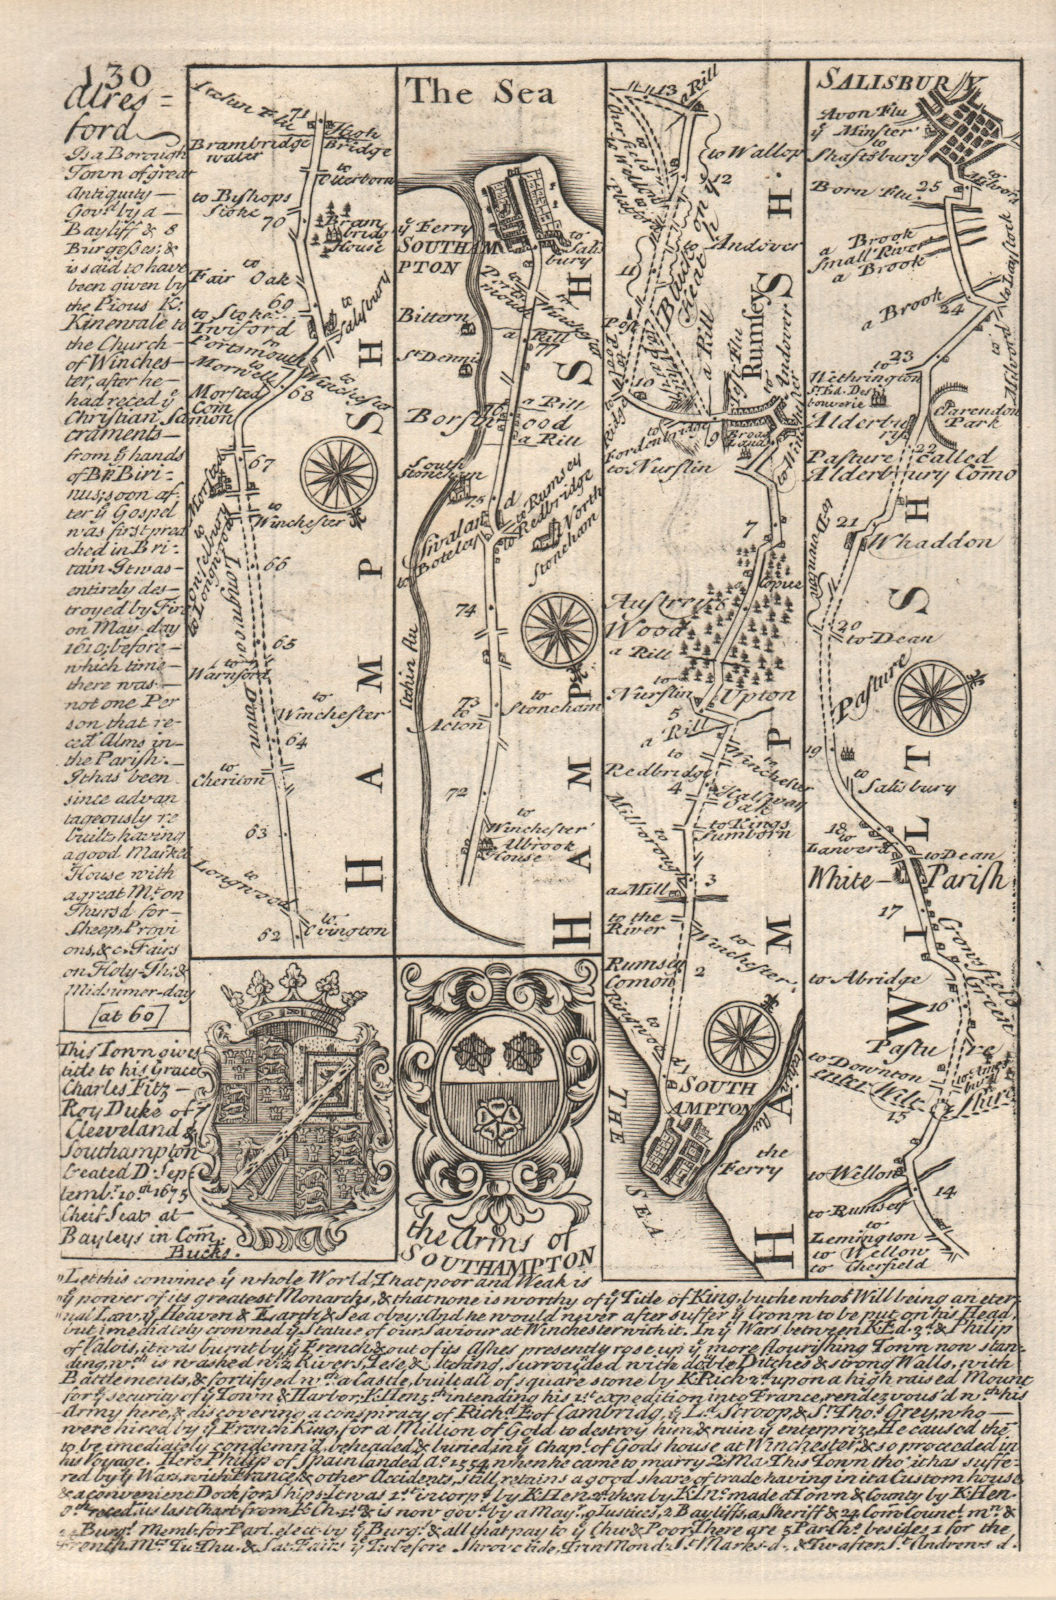 Southampton-Romsey-Whiteparish-Salisbury road map by J. OWEN & E. BOWEN 1753